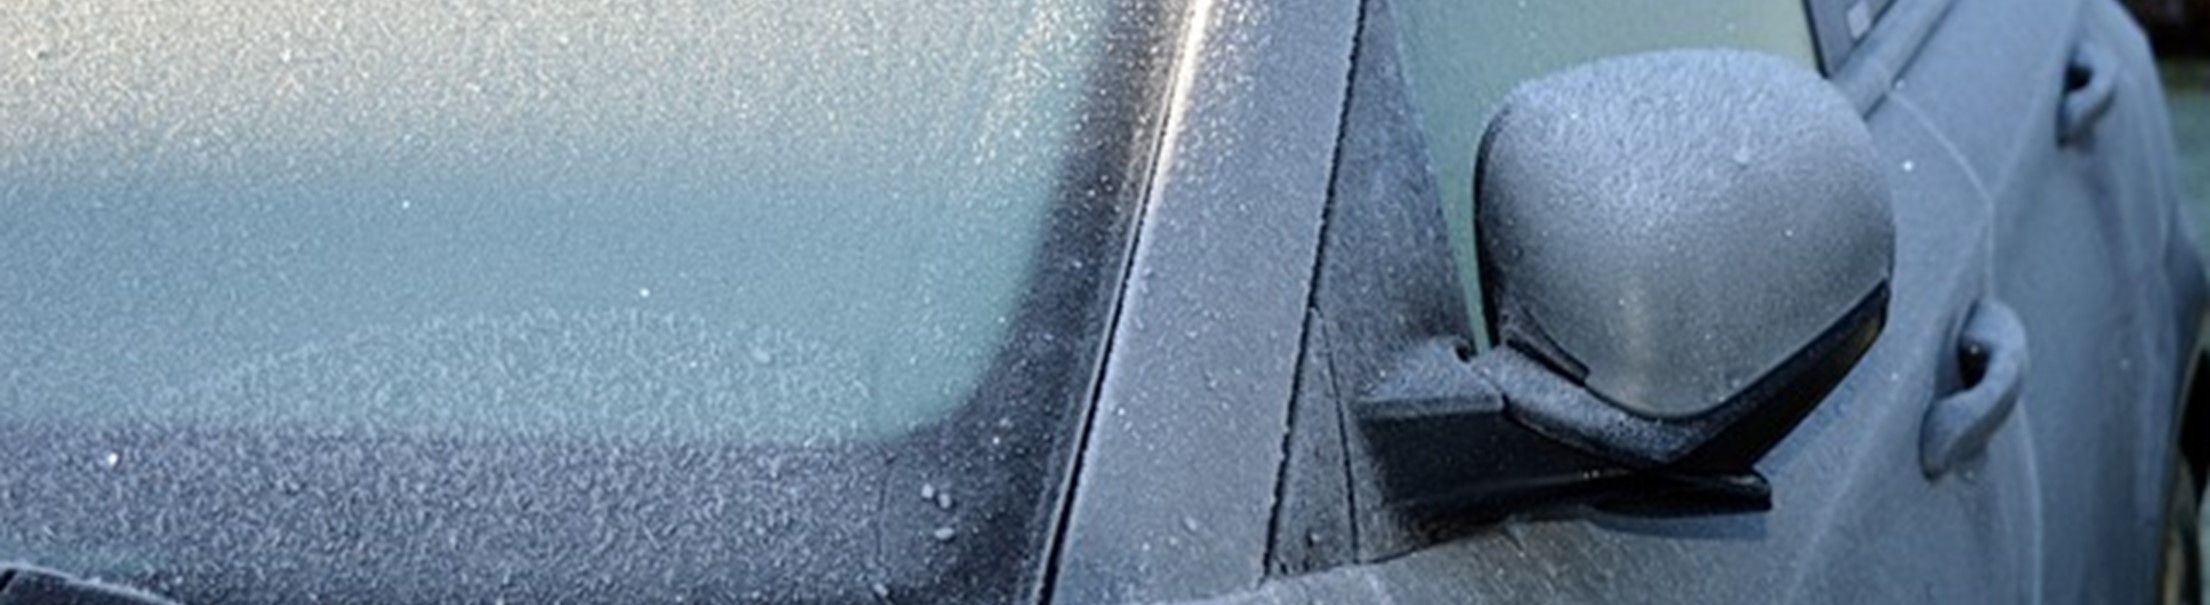 Frostschutzmittel für die Autoscheiben